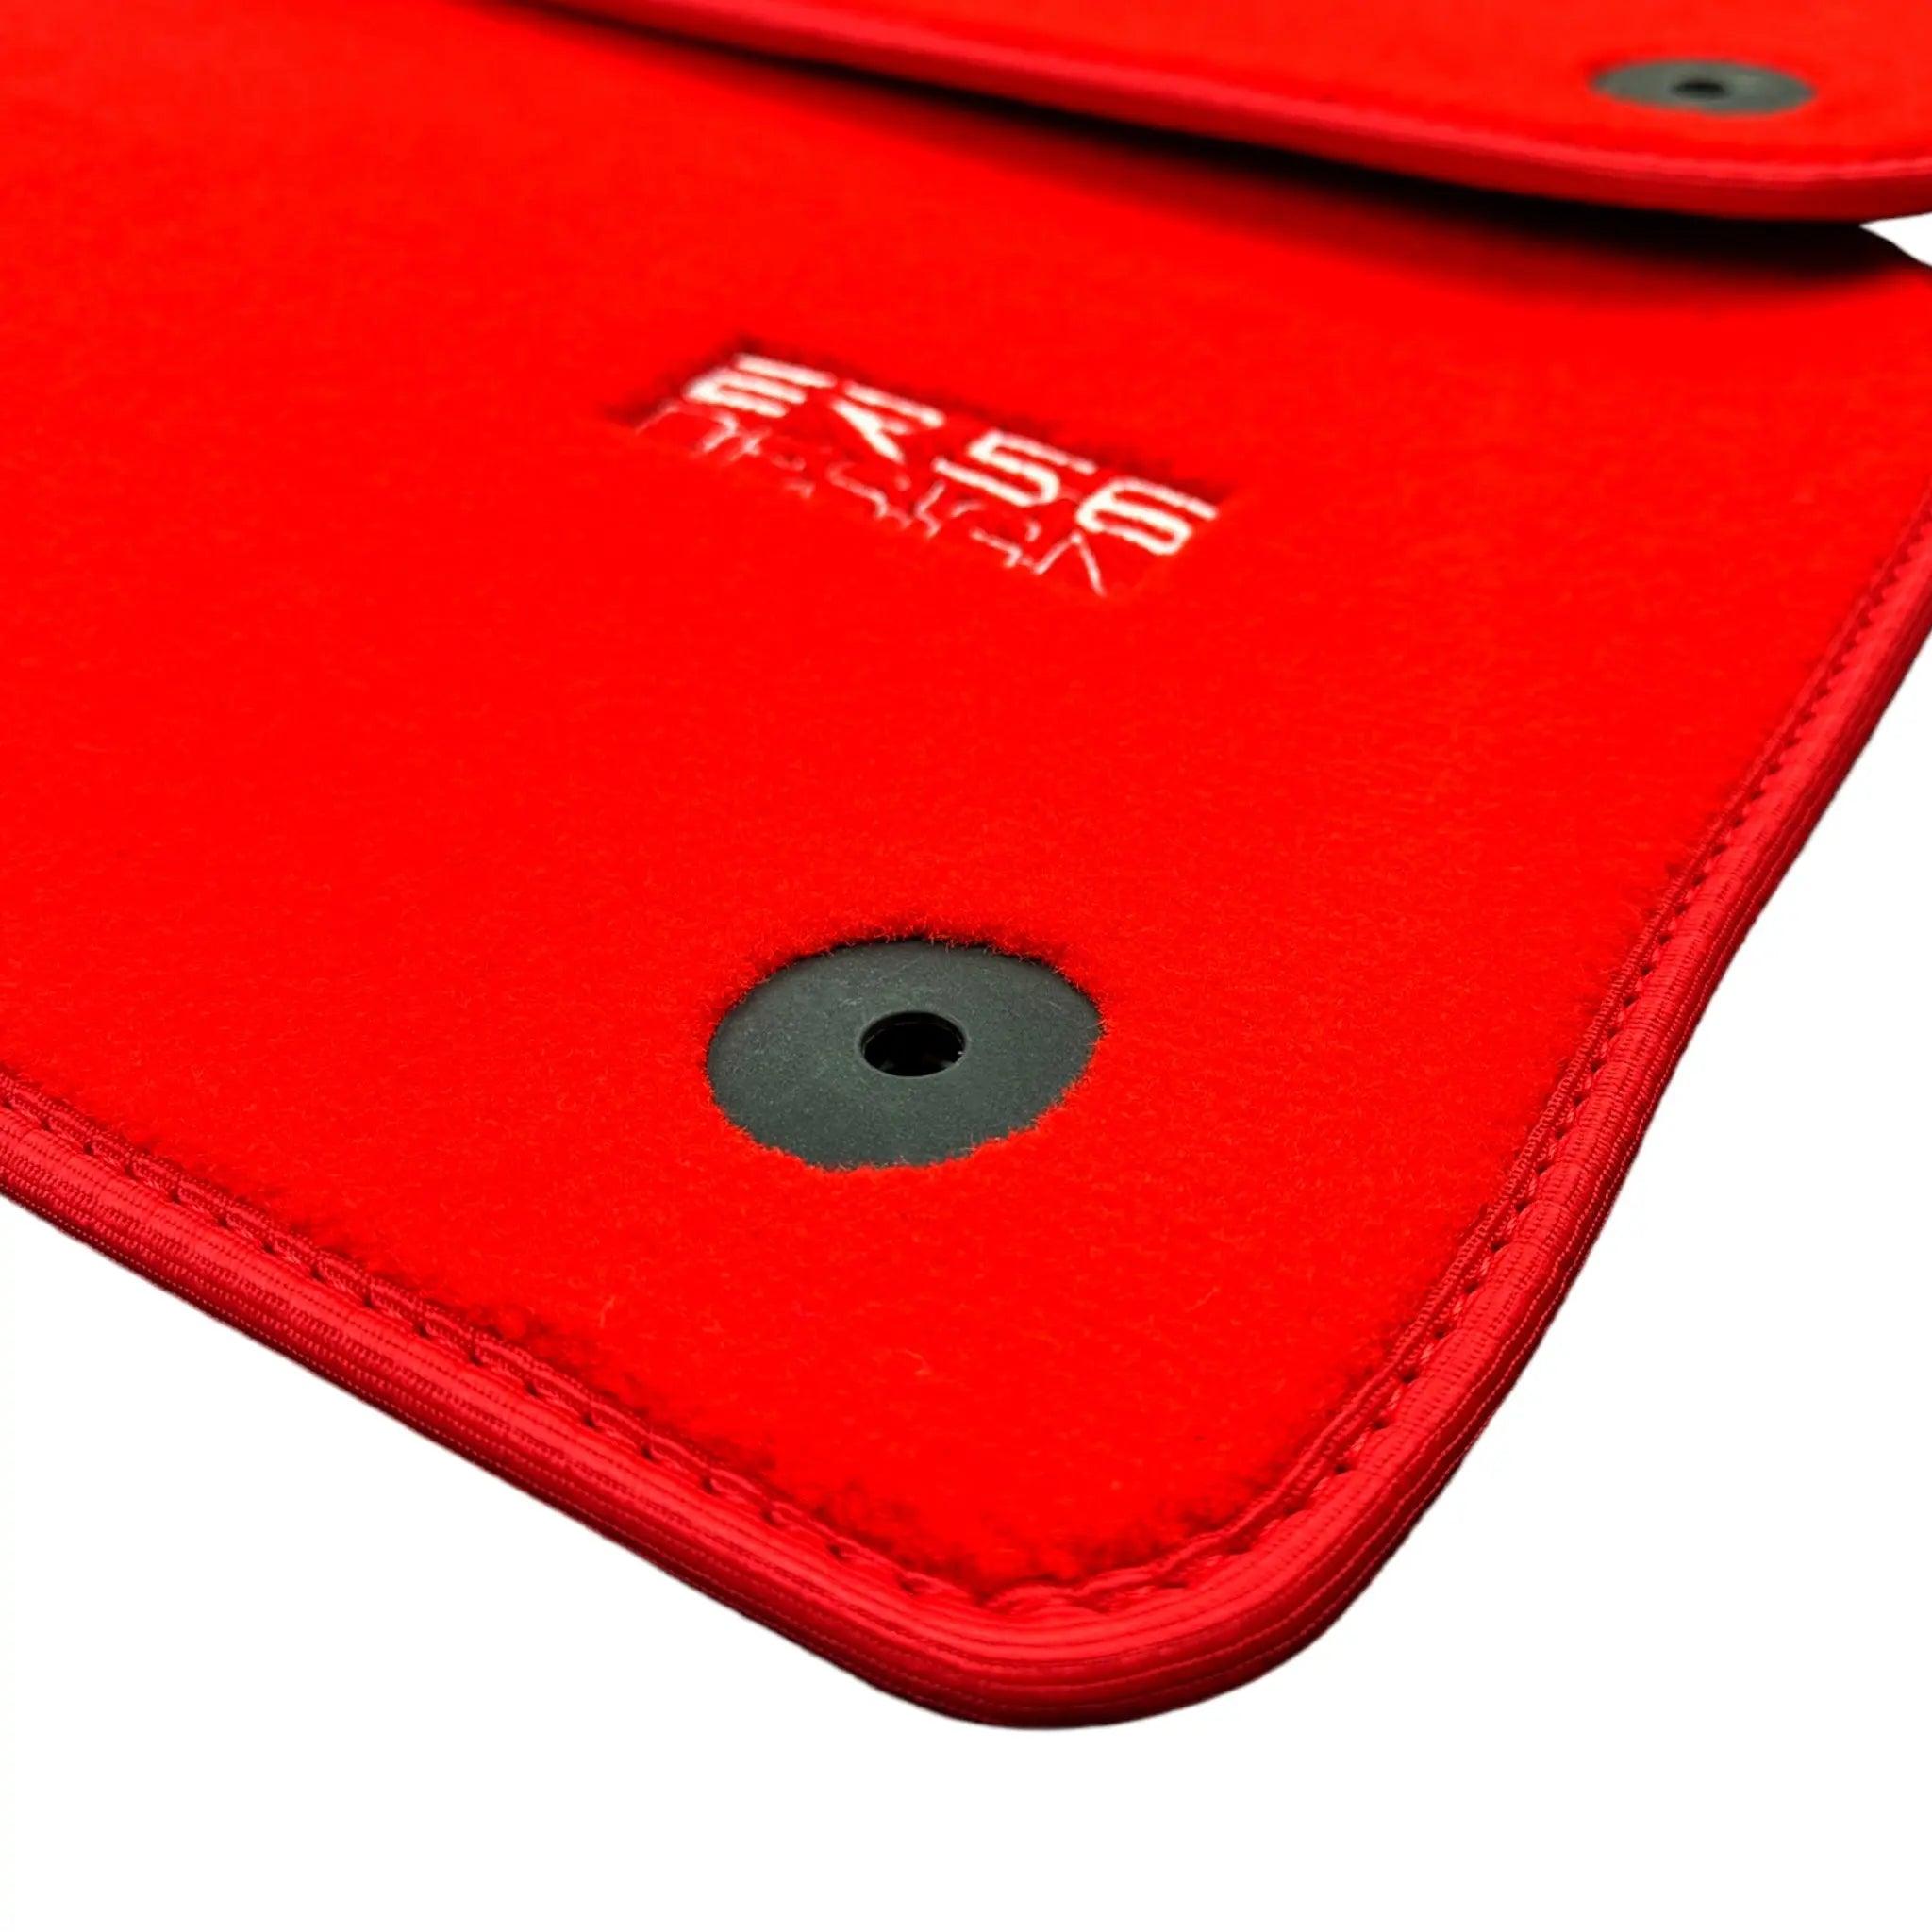 Red Floor Mats for Audi A4 - B8 Sedan (2008-2015) | ER56 Design